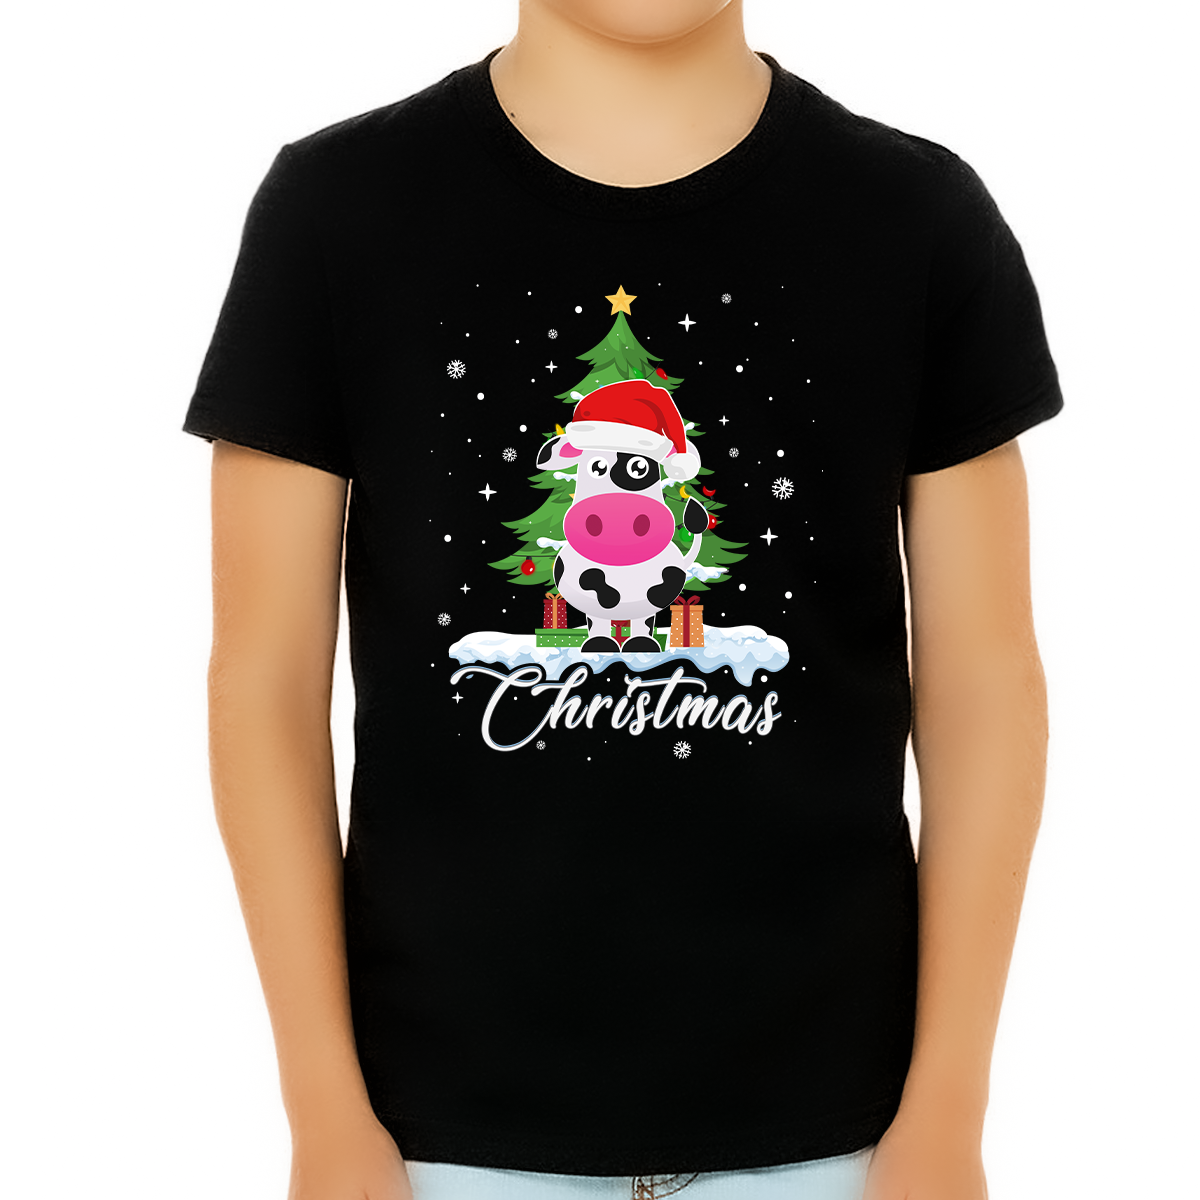 Boys Christmas Shirt Cow Christmas Shirts for Boys Youth Cute Christmas Shirts for Kids